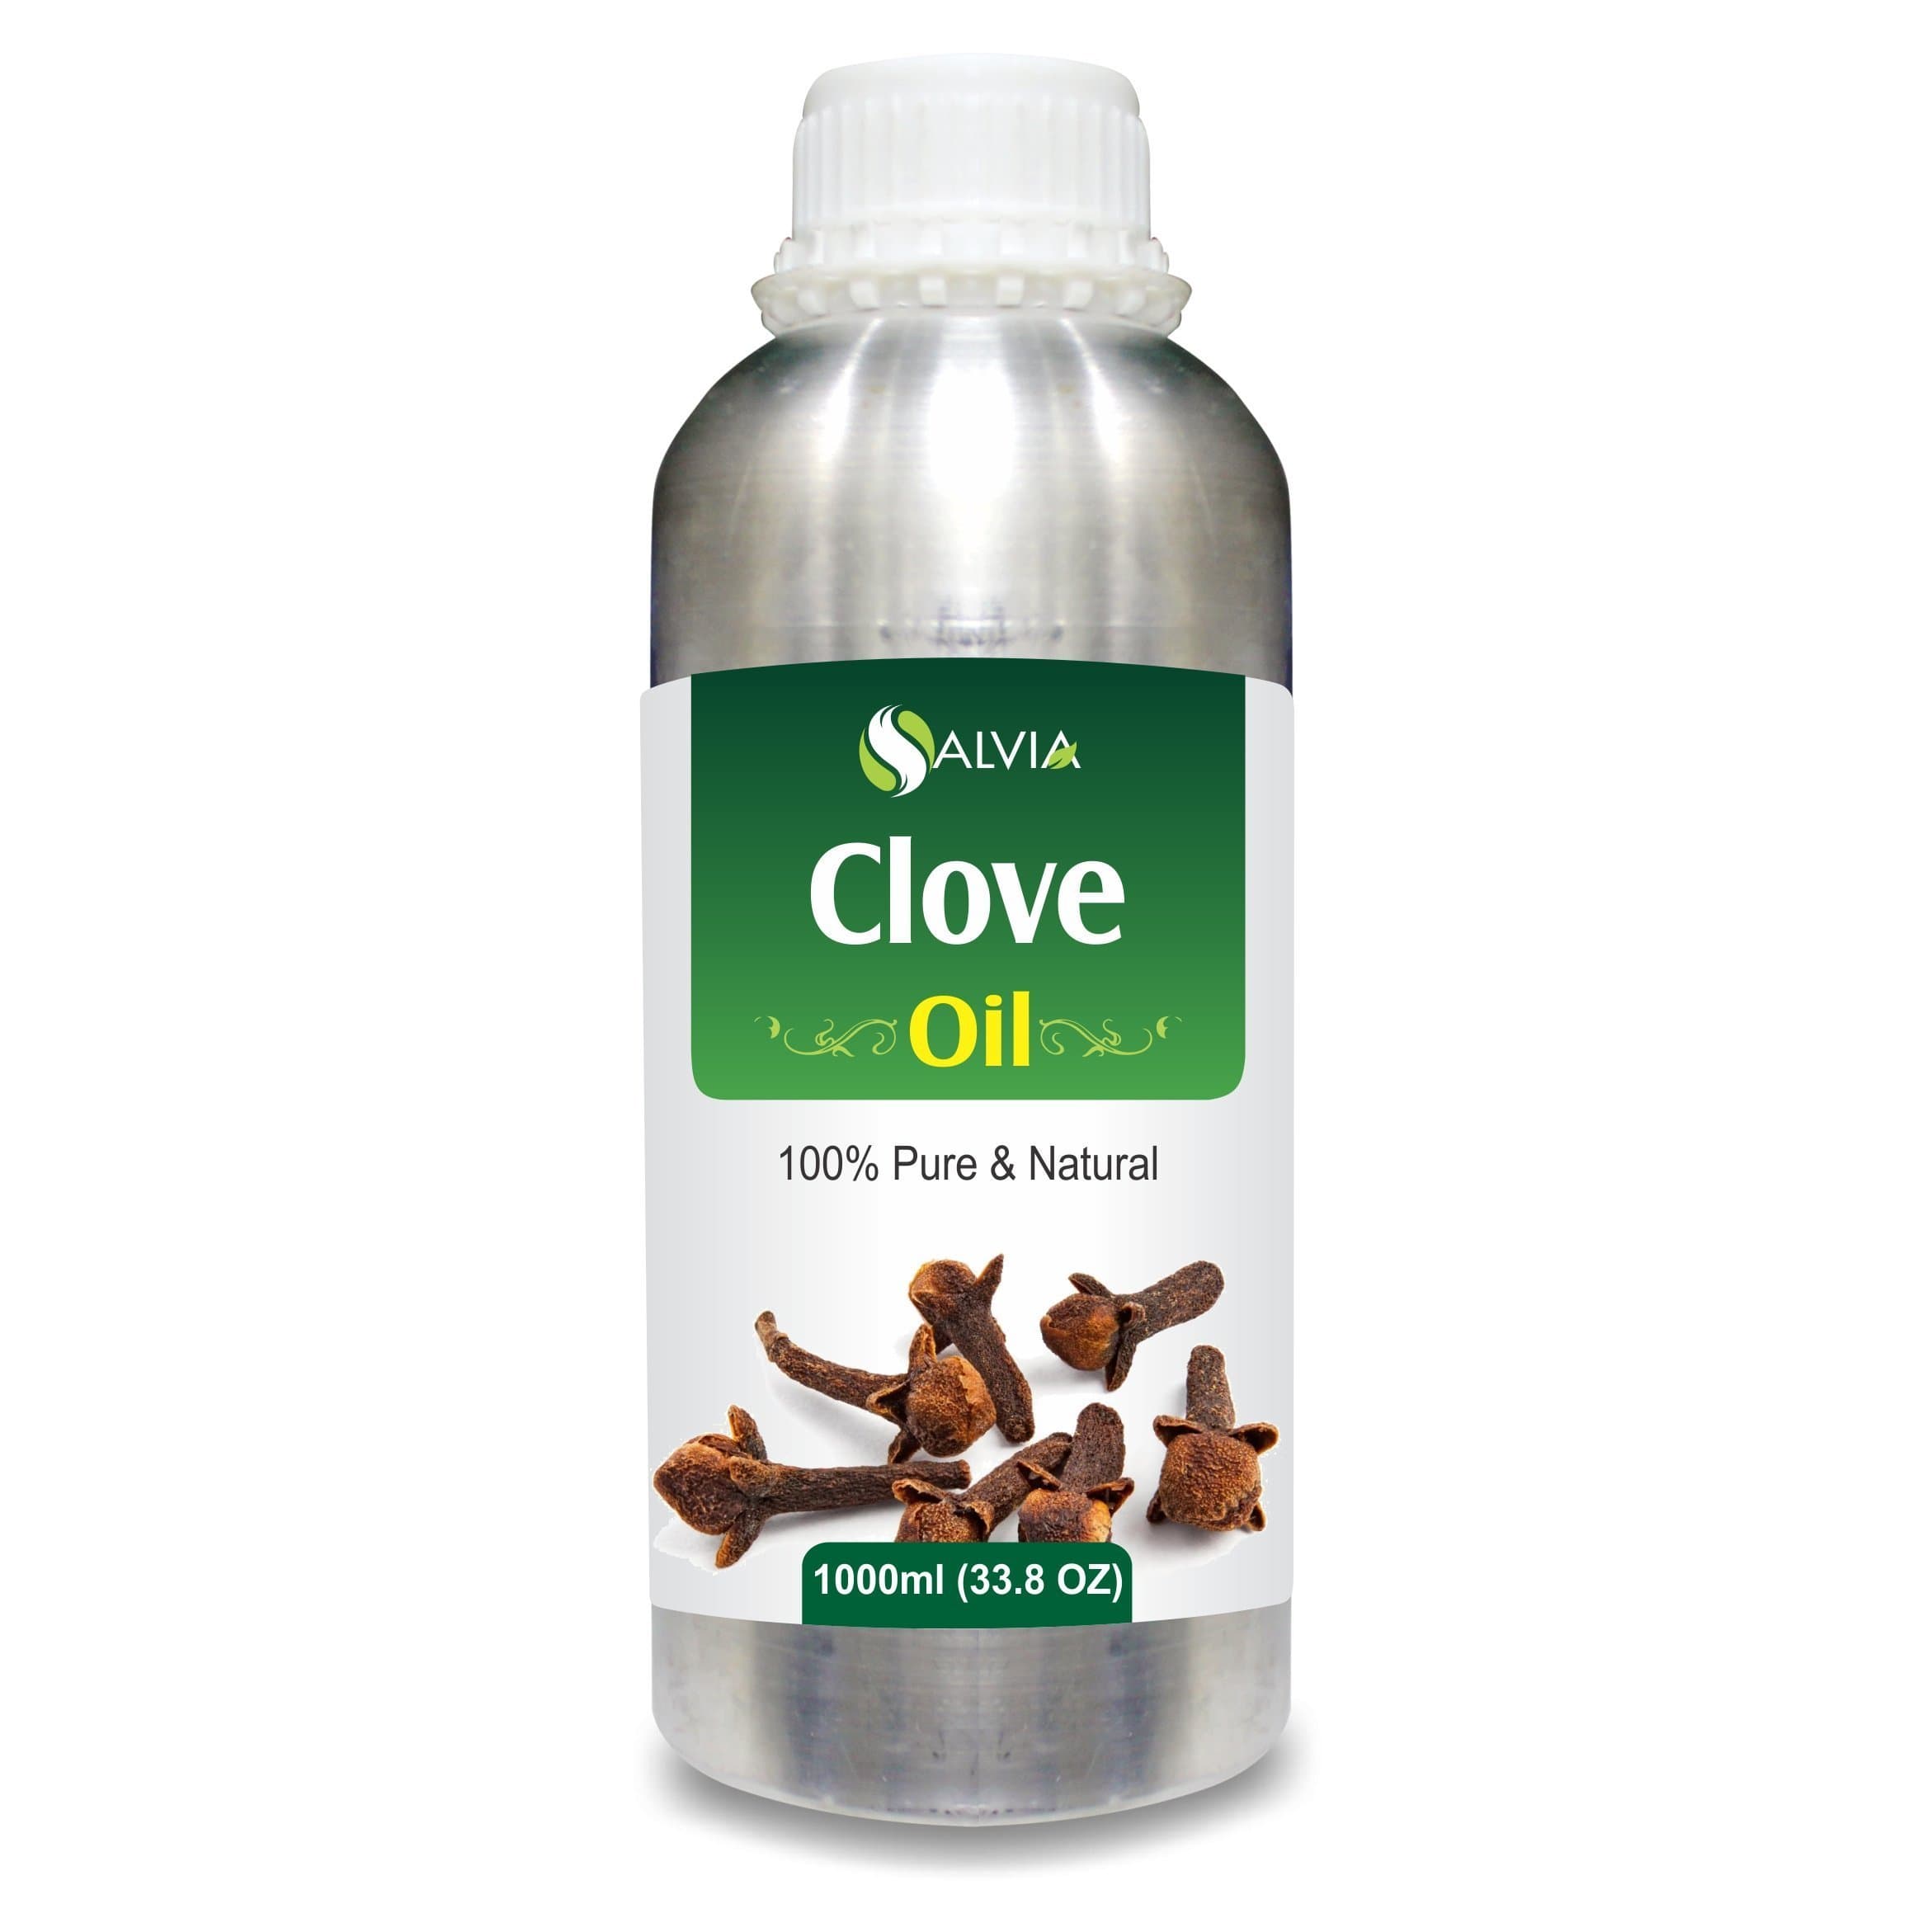 clove oil benefits